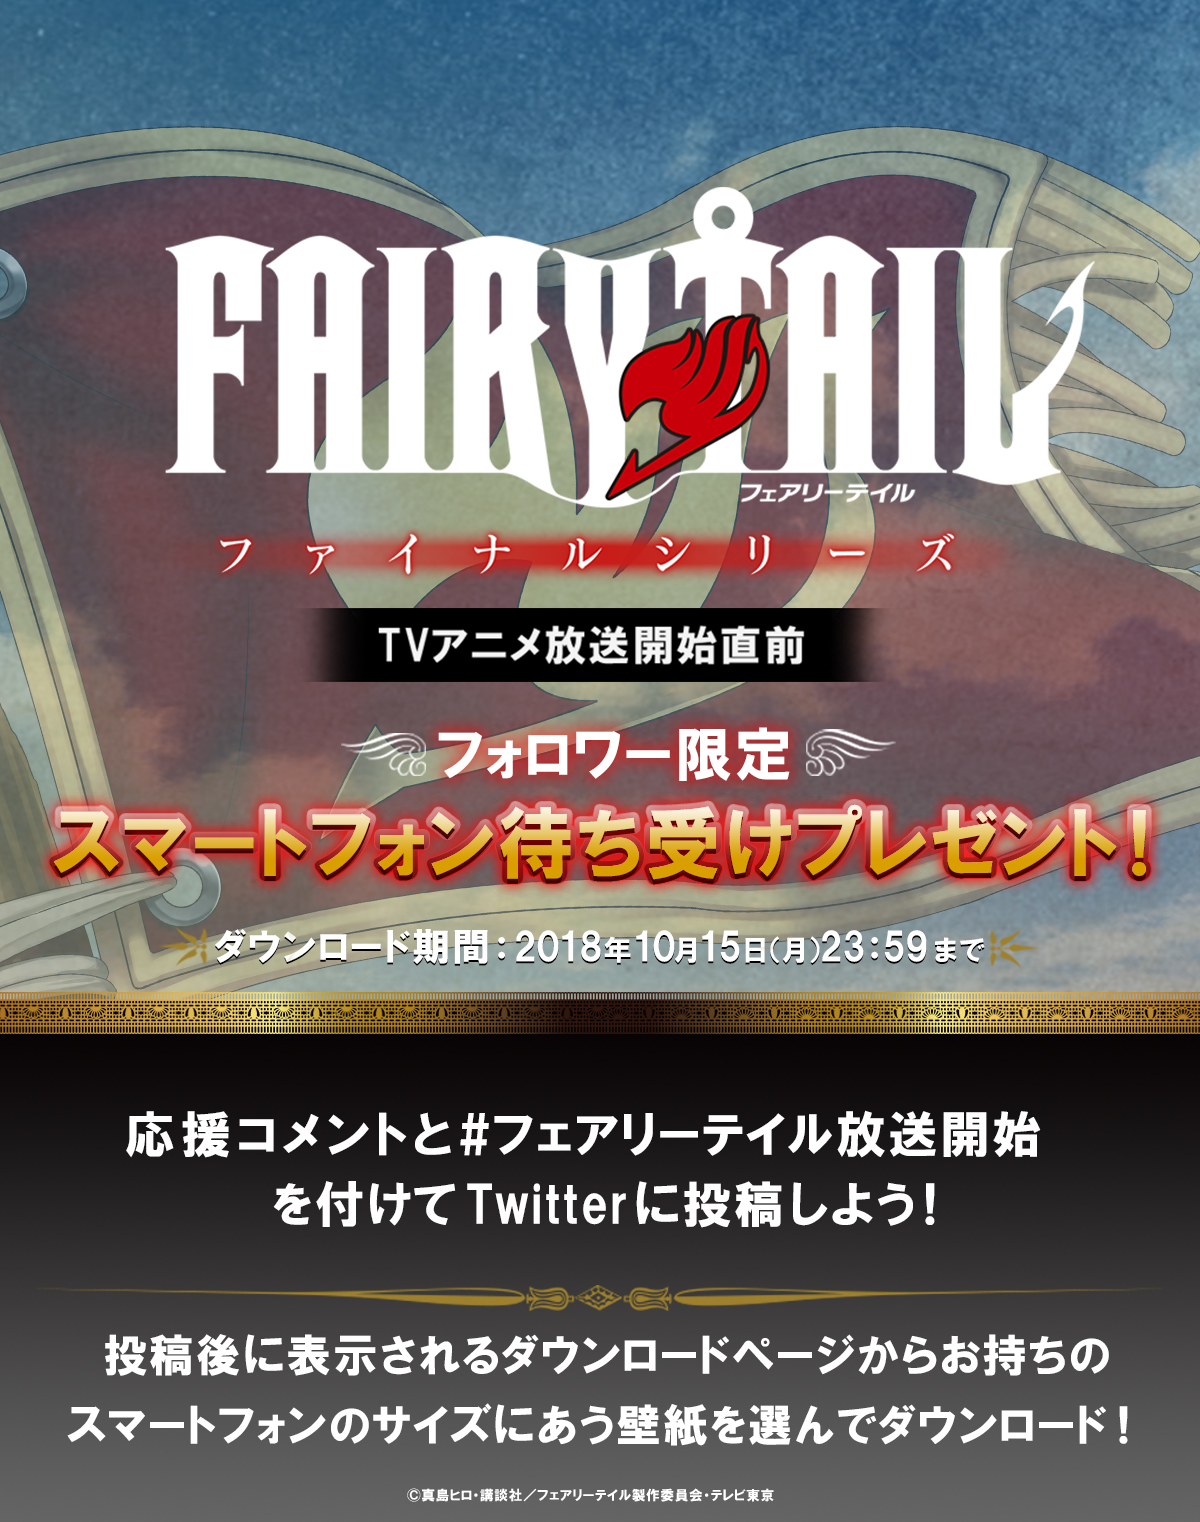 Tvアニメ Fairy Tail フォロワー限定スマートフォン壁紙プレゼント